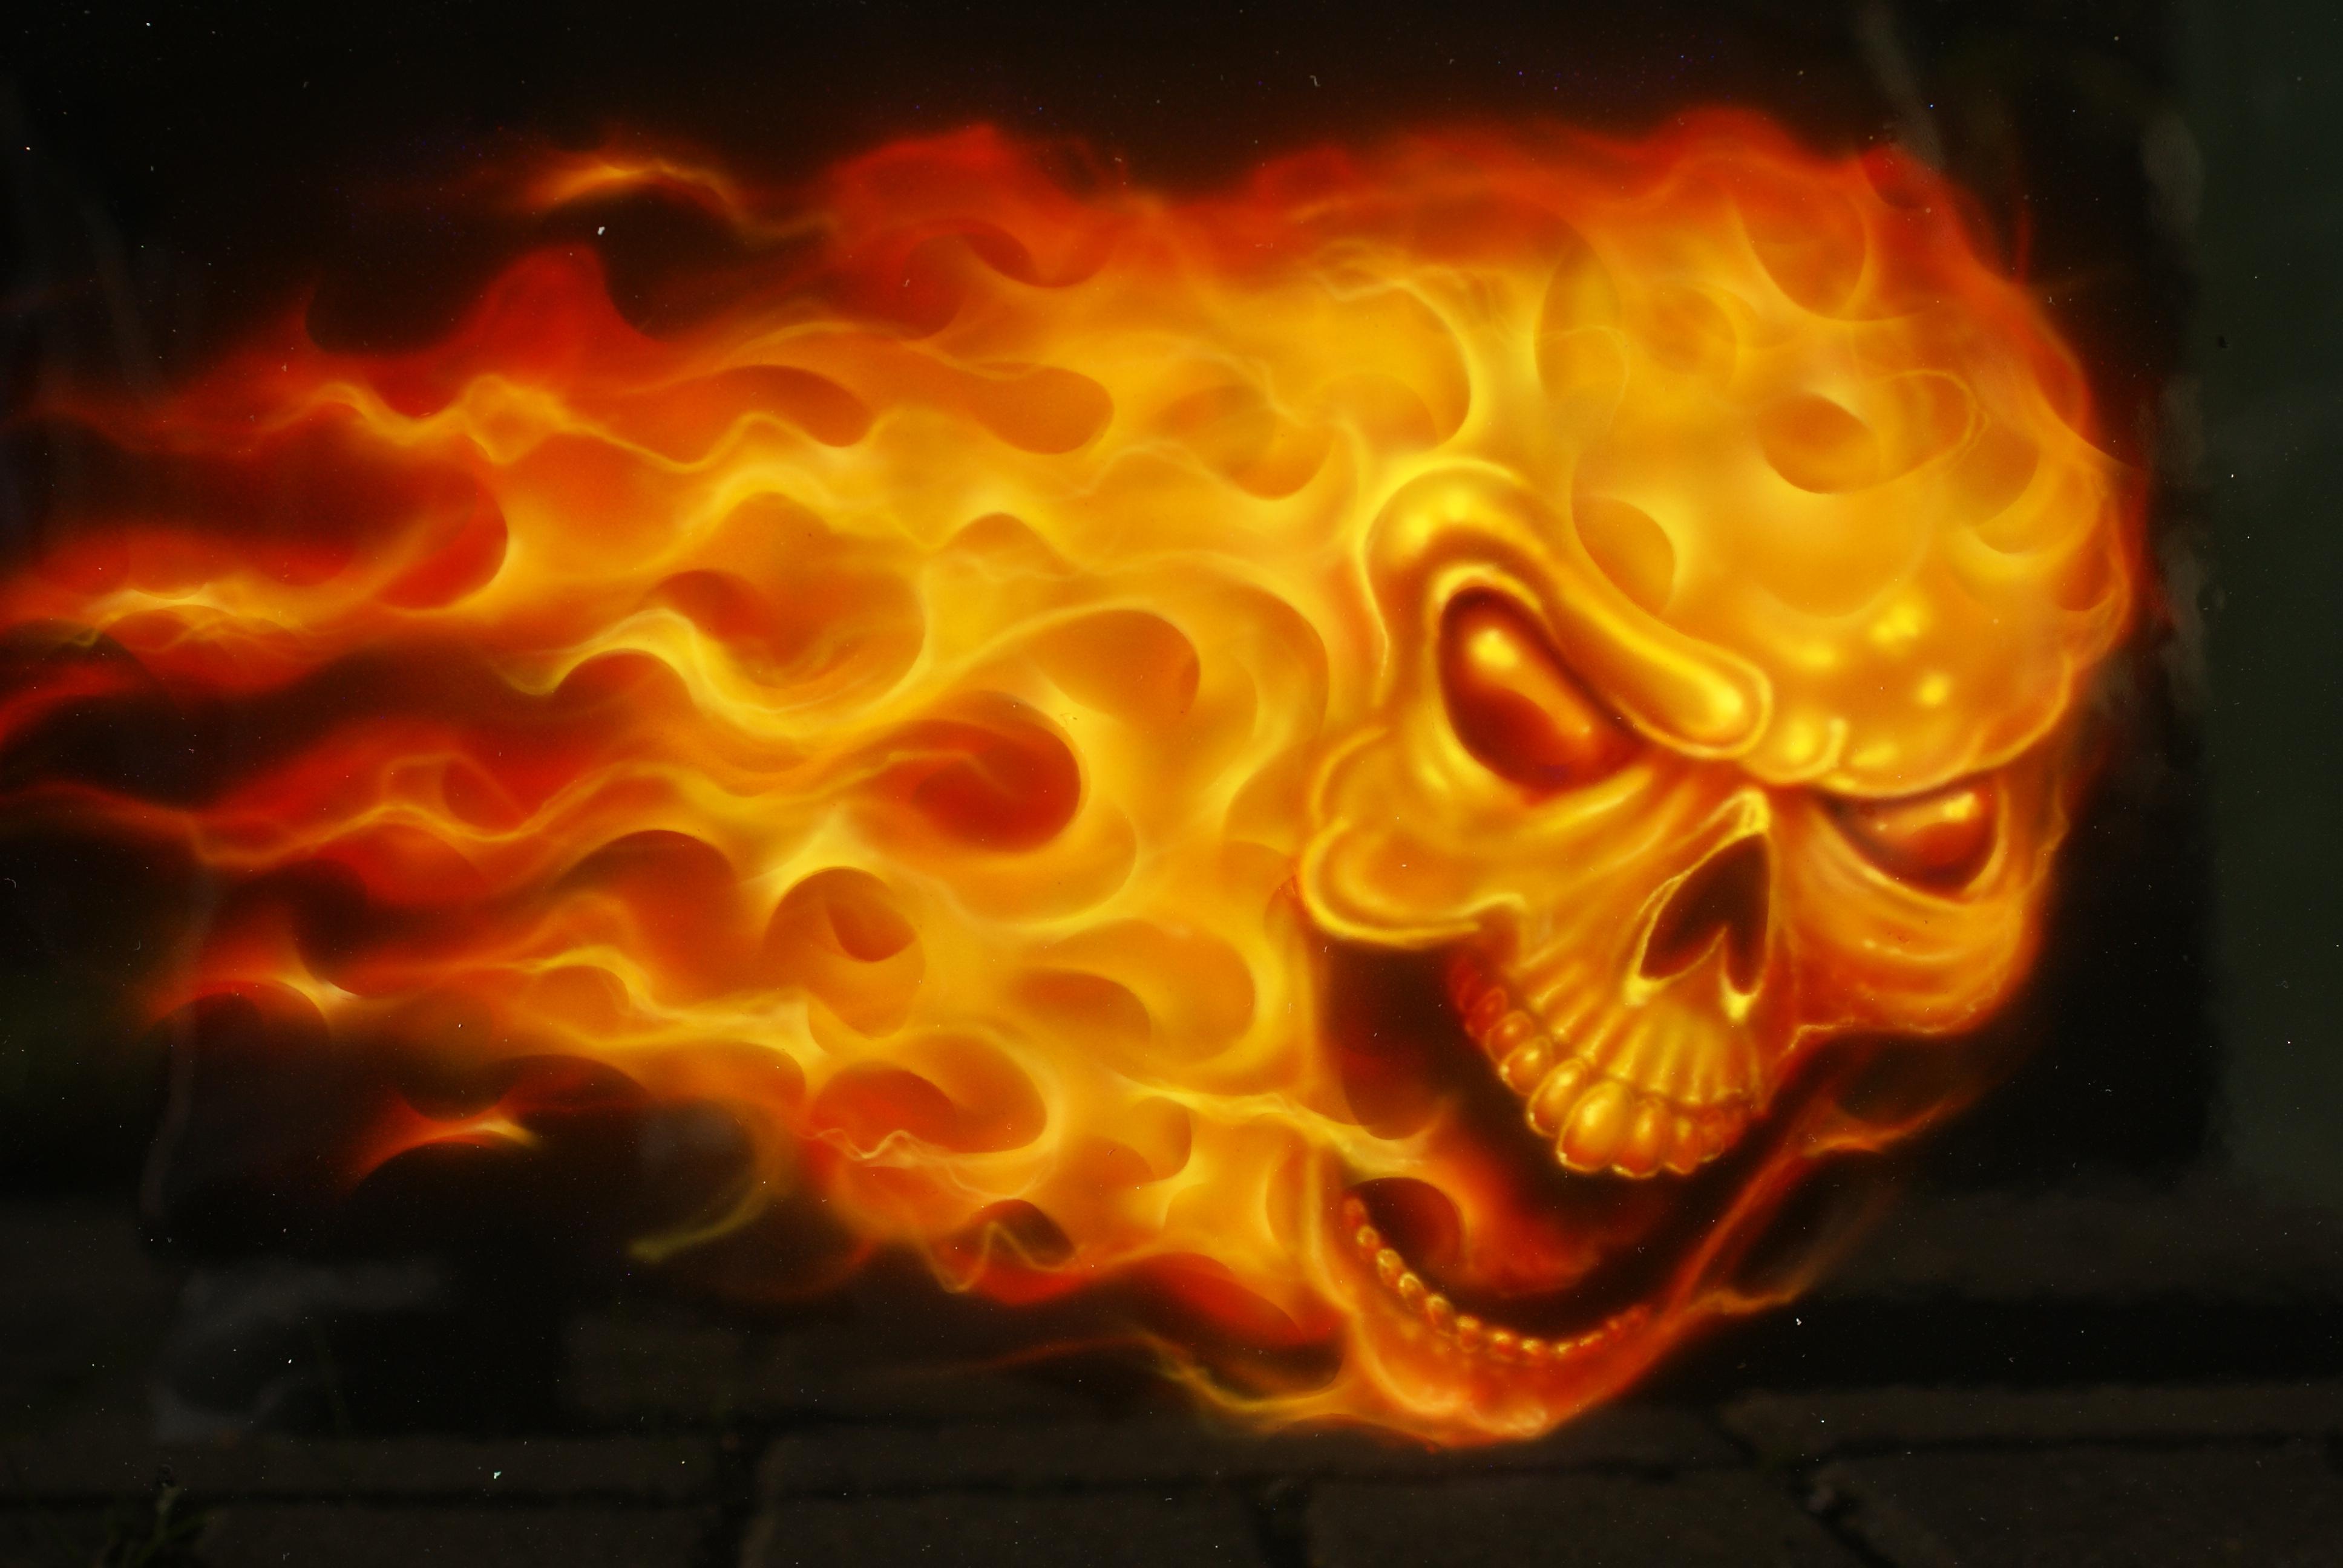 3872 x 2592 · jpeg - [77+] Fire Skull Wallpaper on WallpaperSafari